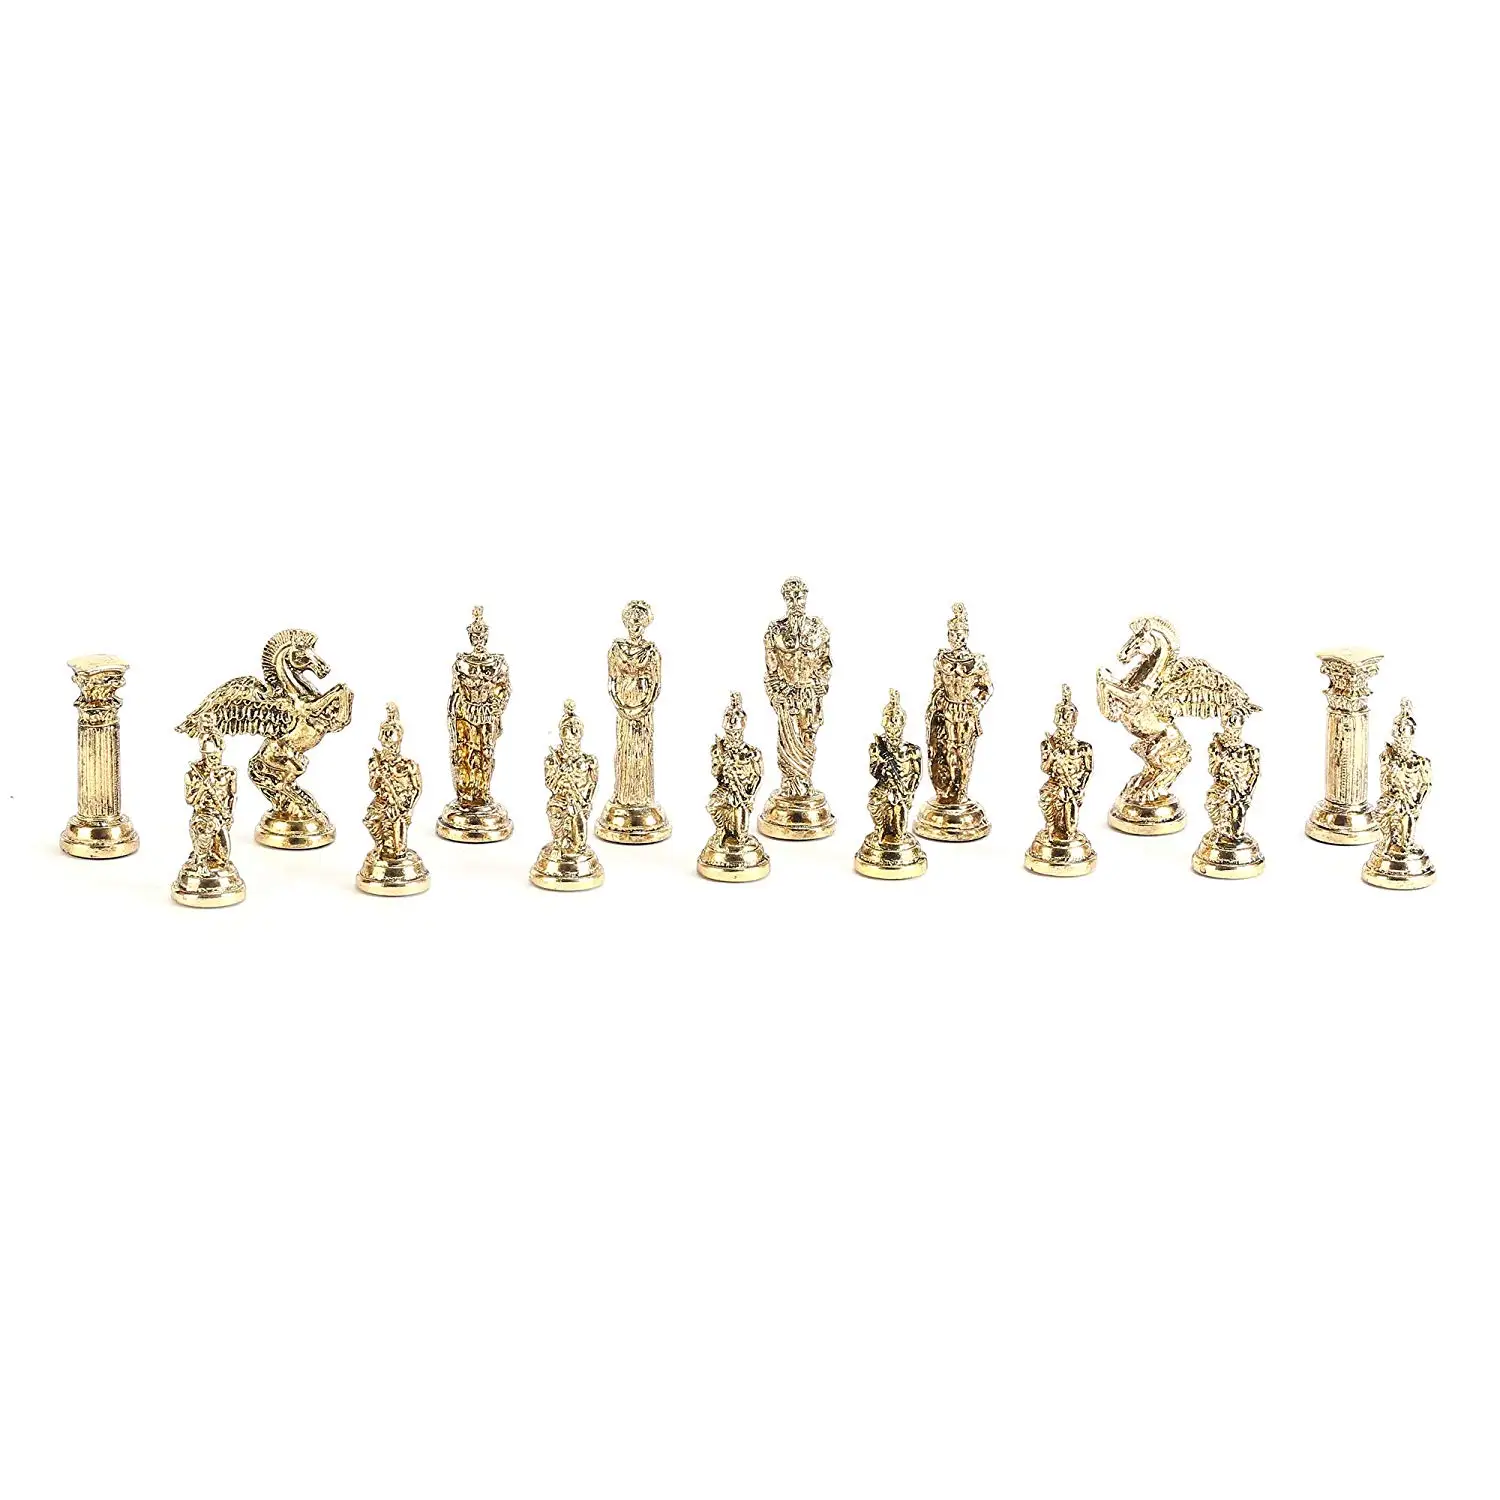 Только шахматные фигуры) мифологические фигурки Пегаса металлические шахматные фигуры большого размера 9,5 см(доска в комплект не входит